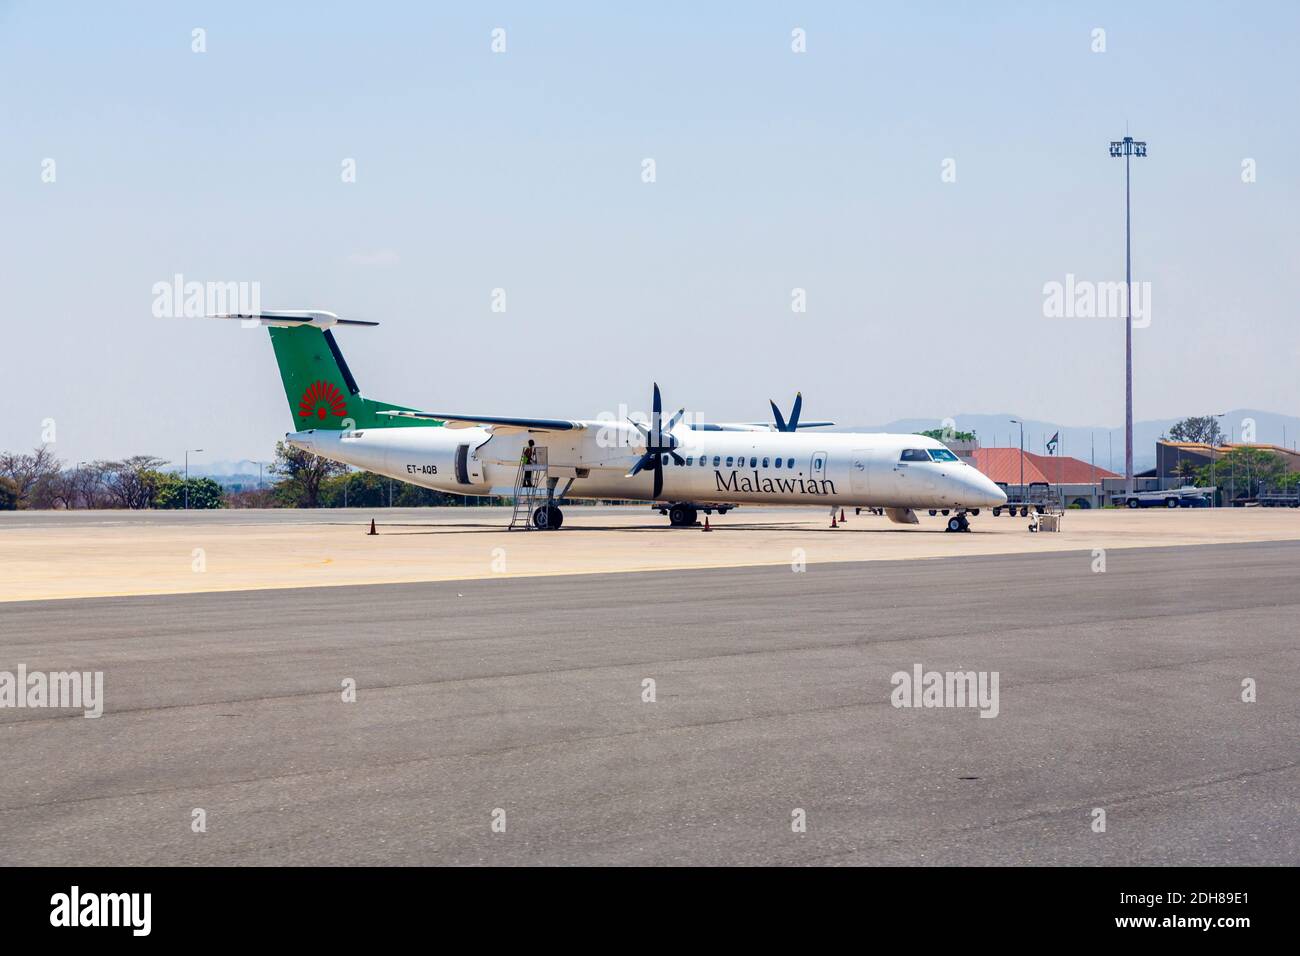 Malawian Airlines turbopropulseur de Havilland Canada Dash 8-400 (exploité par Ethiopian Airlines) sur la piste de l'aéroport international de Kamazu, Malawi Banque D'Images